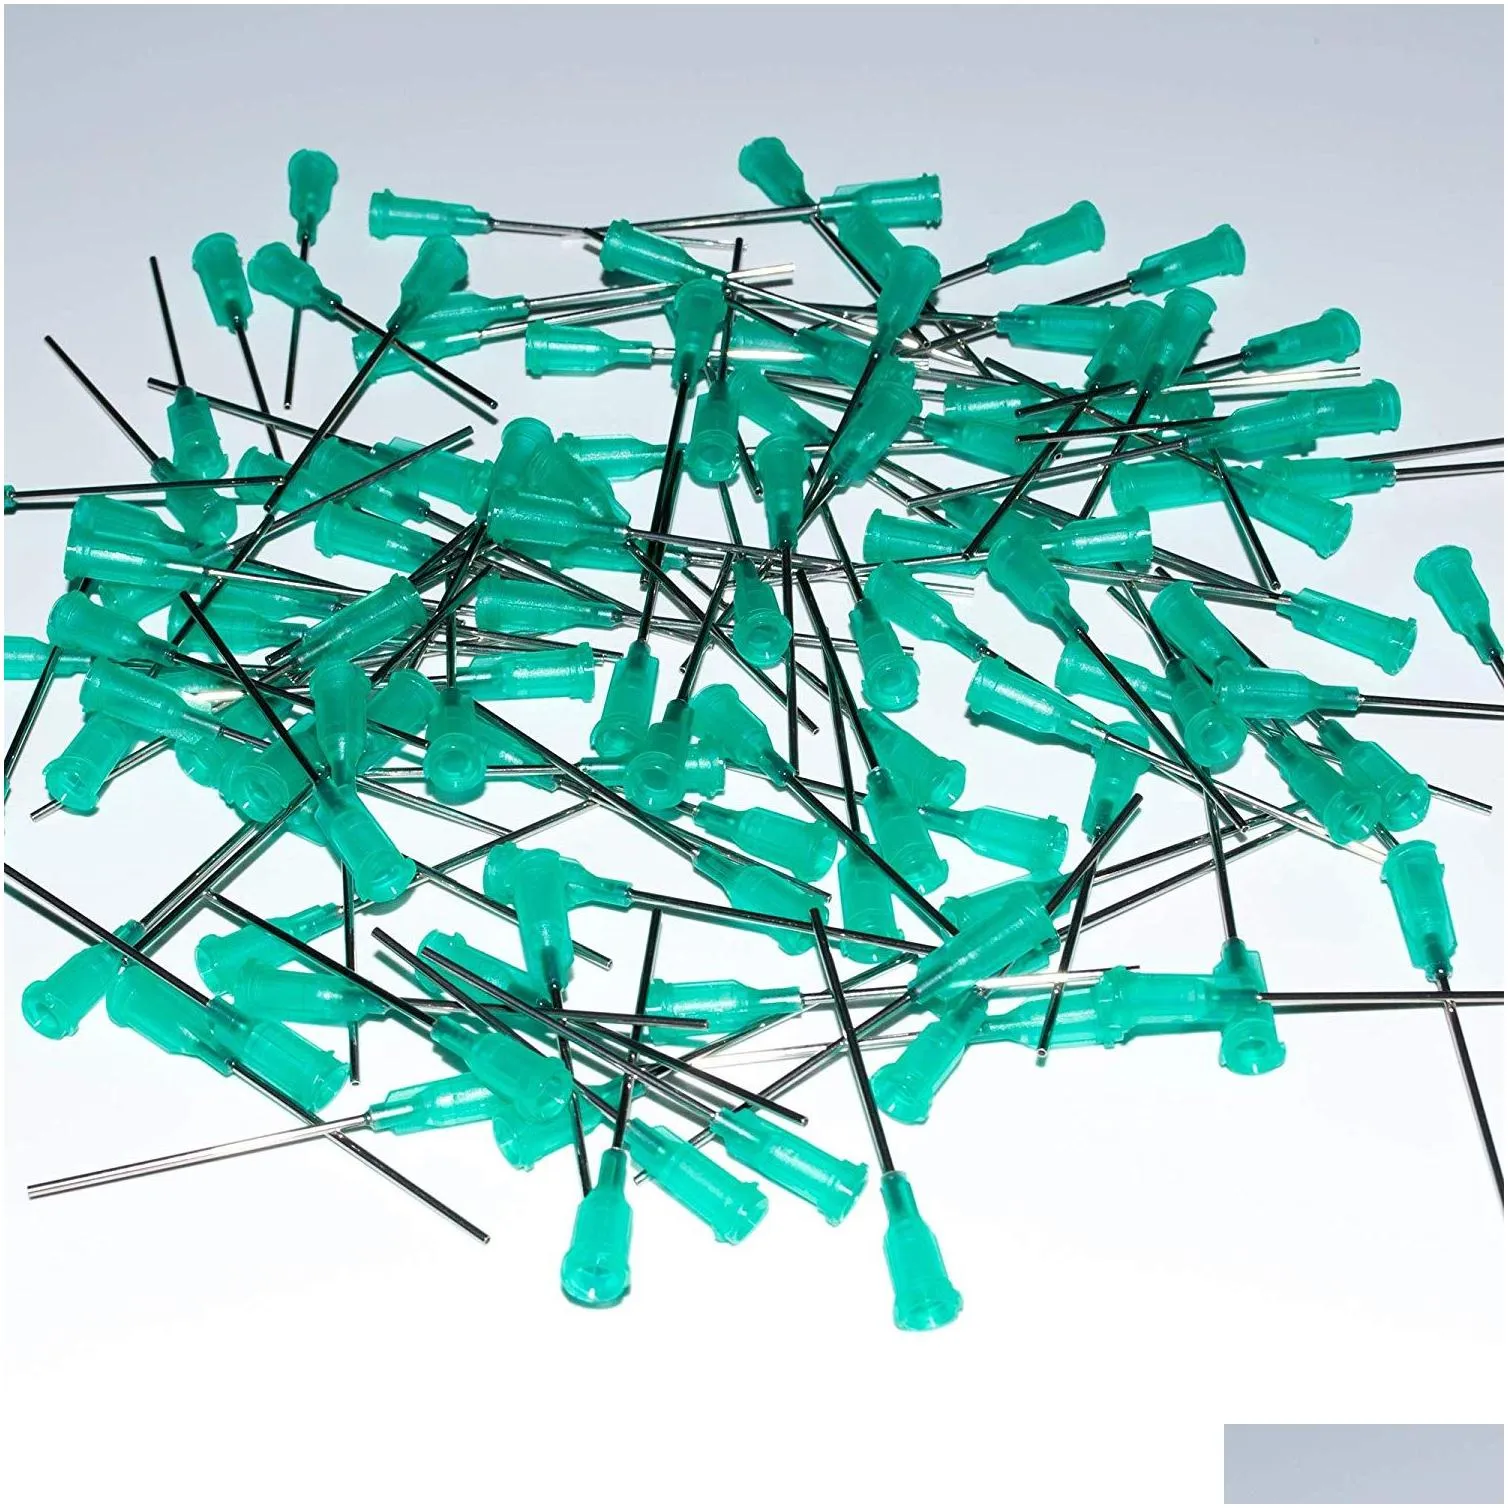 100pcs dispensing needles with luer lock 14ga 15ga 16ga 18ga 20ga 21ga 22ga 23ga 25ga 27ga x 1.5inch blunt tip syringe needle